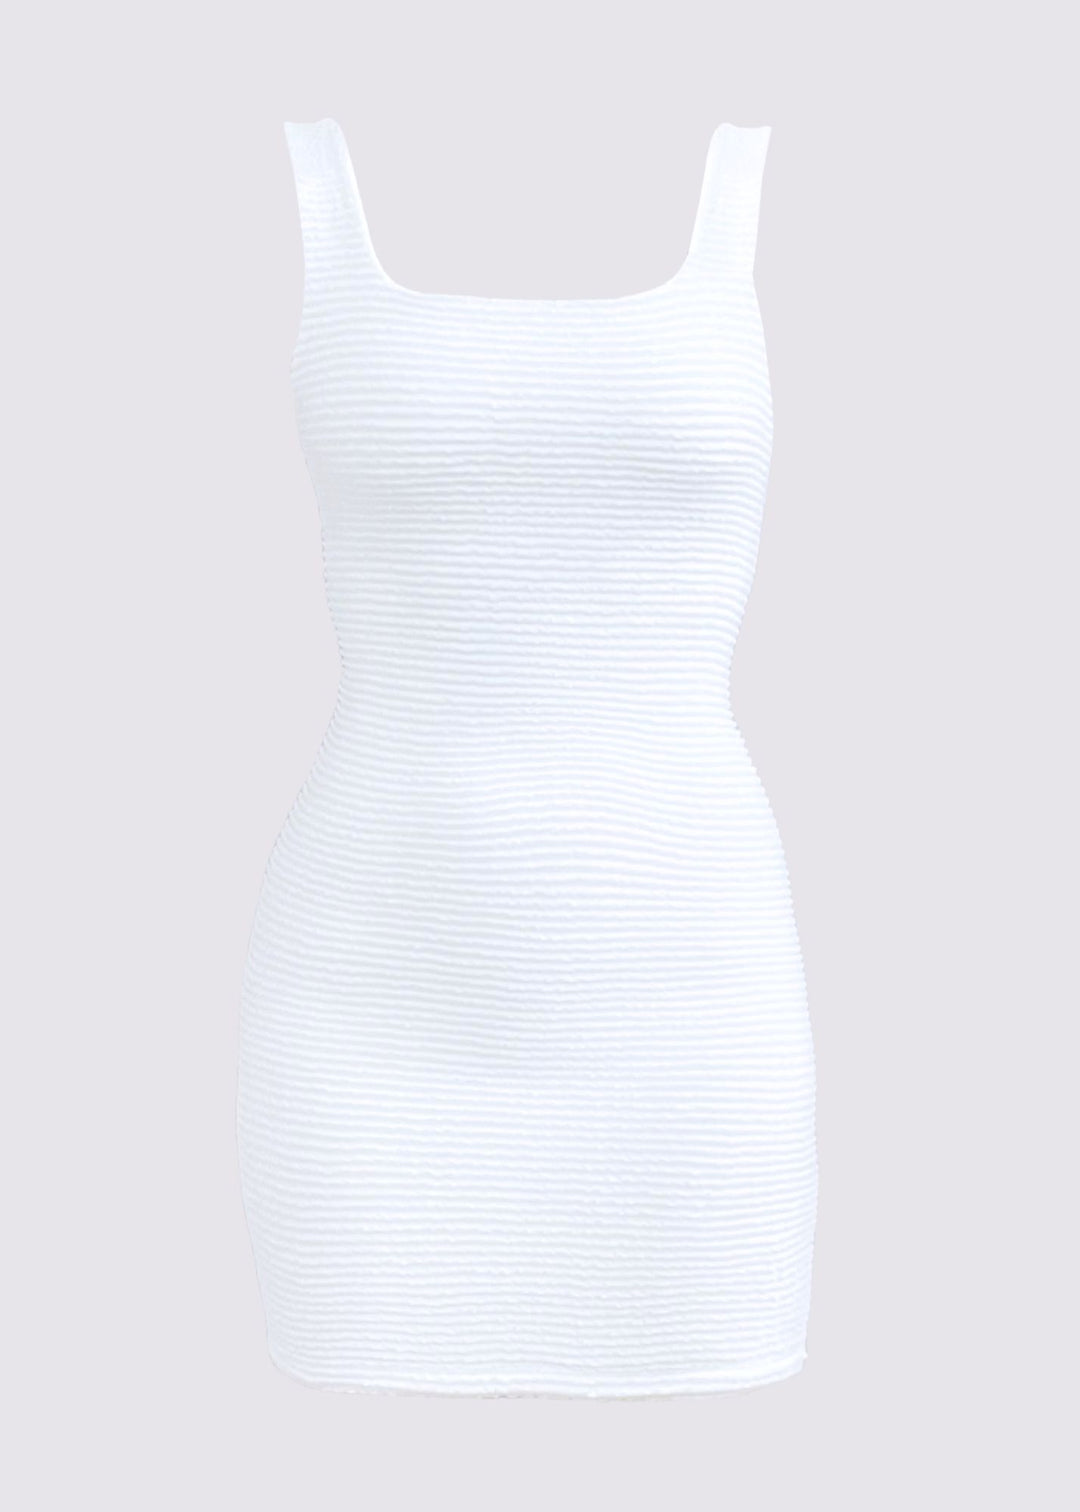 Vestido Beca - Branco Textura